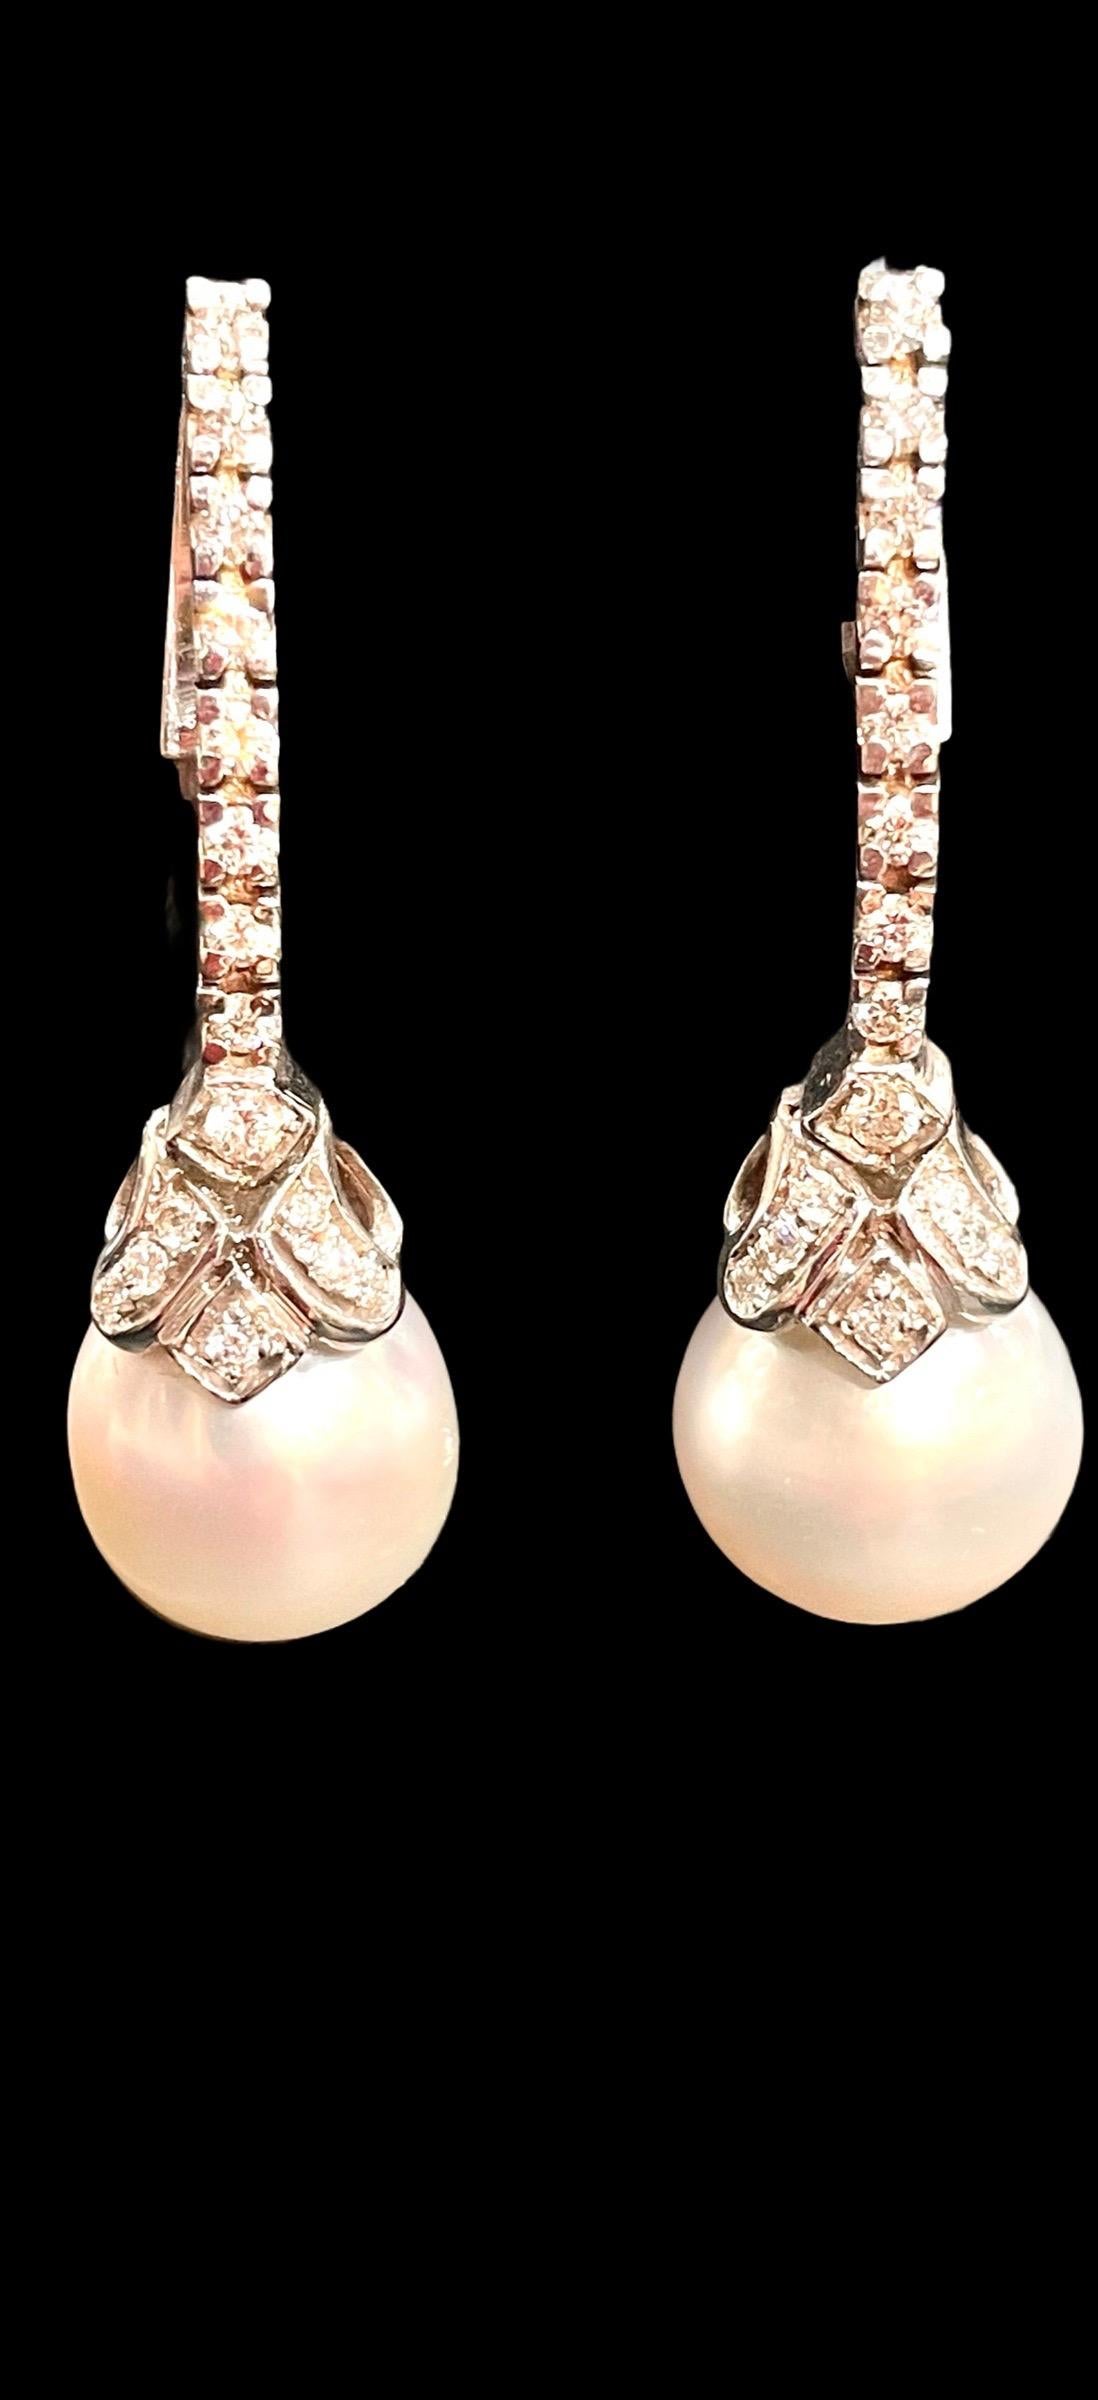 HK Fine Estate Jewels a le plaisir de vous présenter ces étonnantes boucles d'oreilles pendantes en perles françaises. Chaque boucle d'oreille est sertie d'une perle de culture blanche avec un excellent lustre surmontée d'un diamant taille brillant